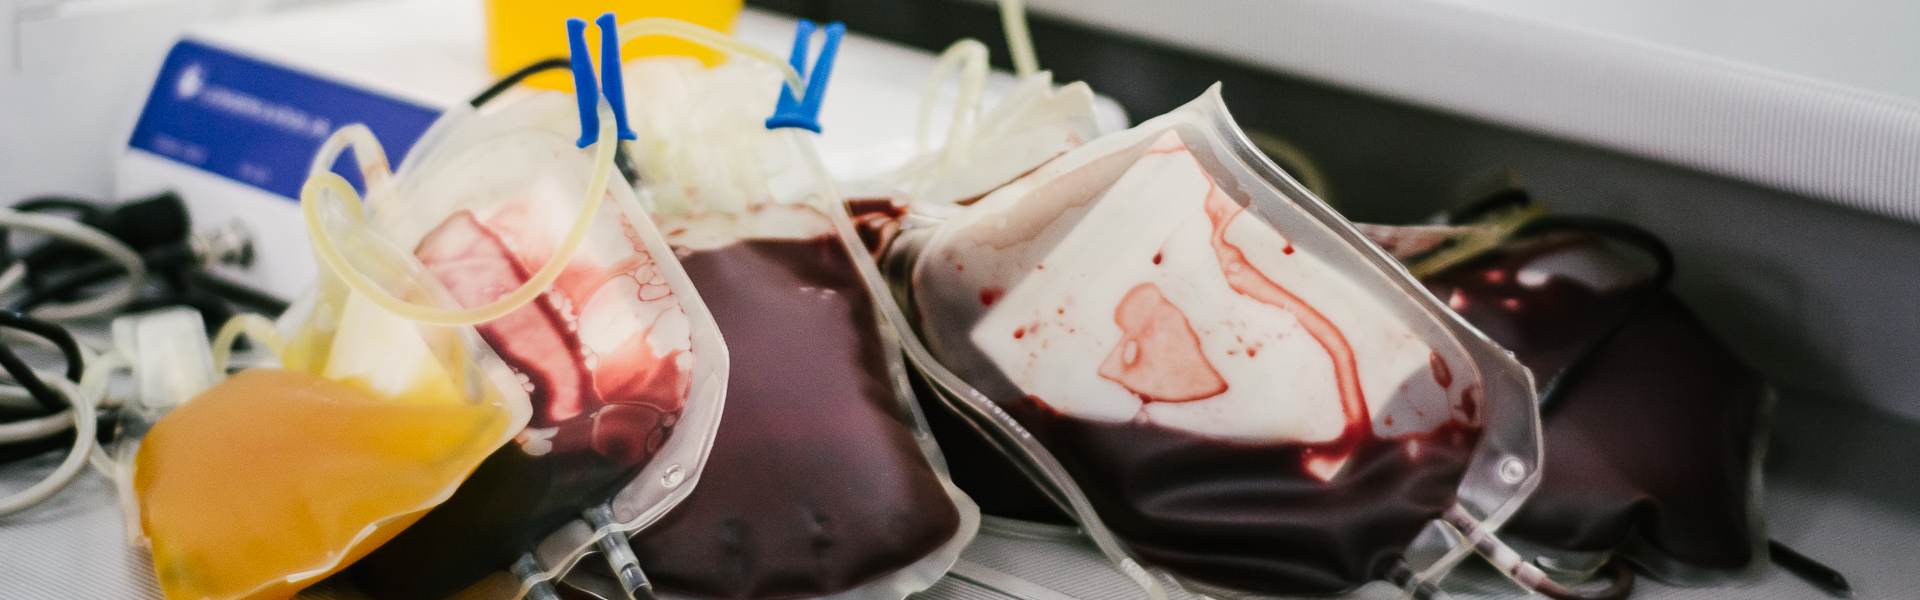 Как перерабатывают и хранят донорскую кровь